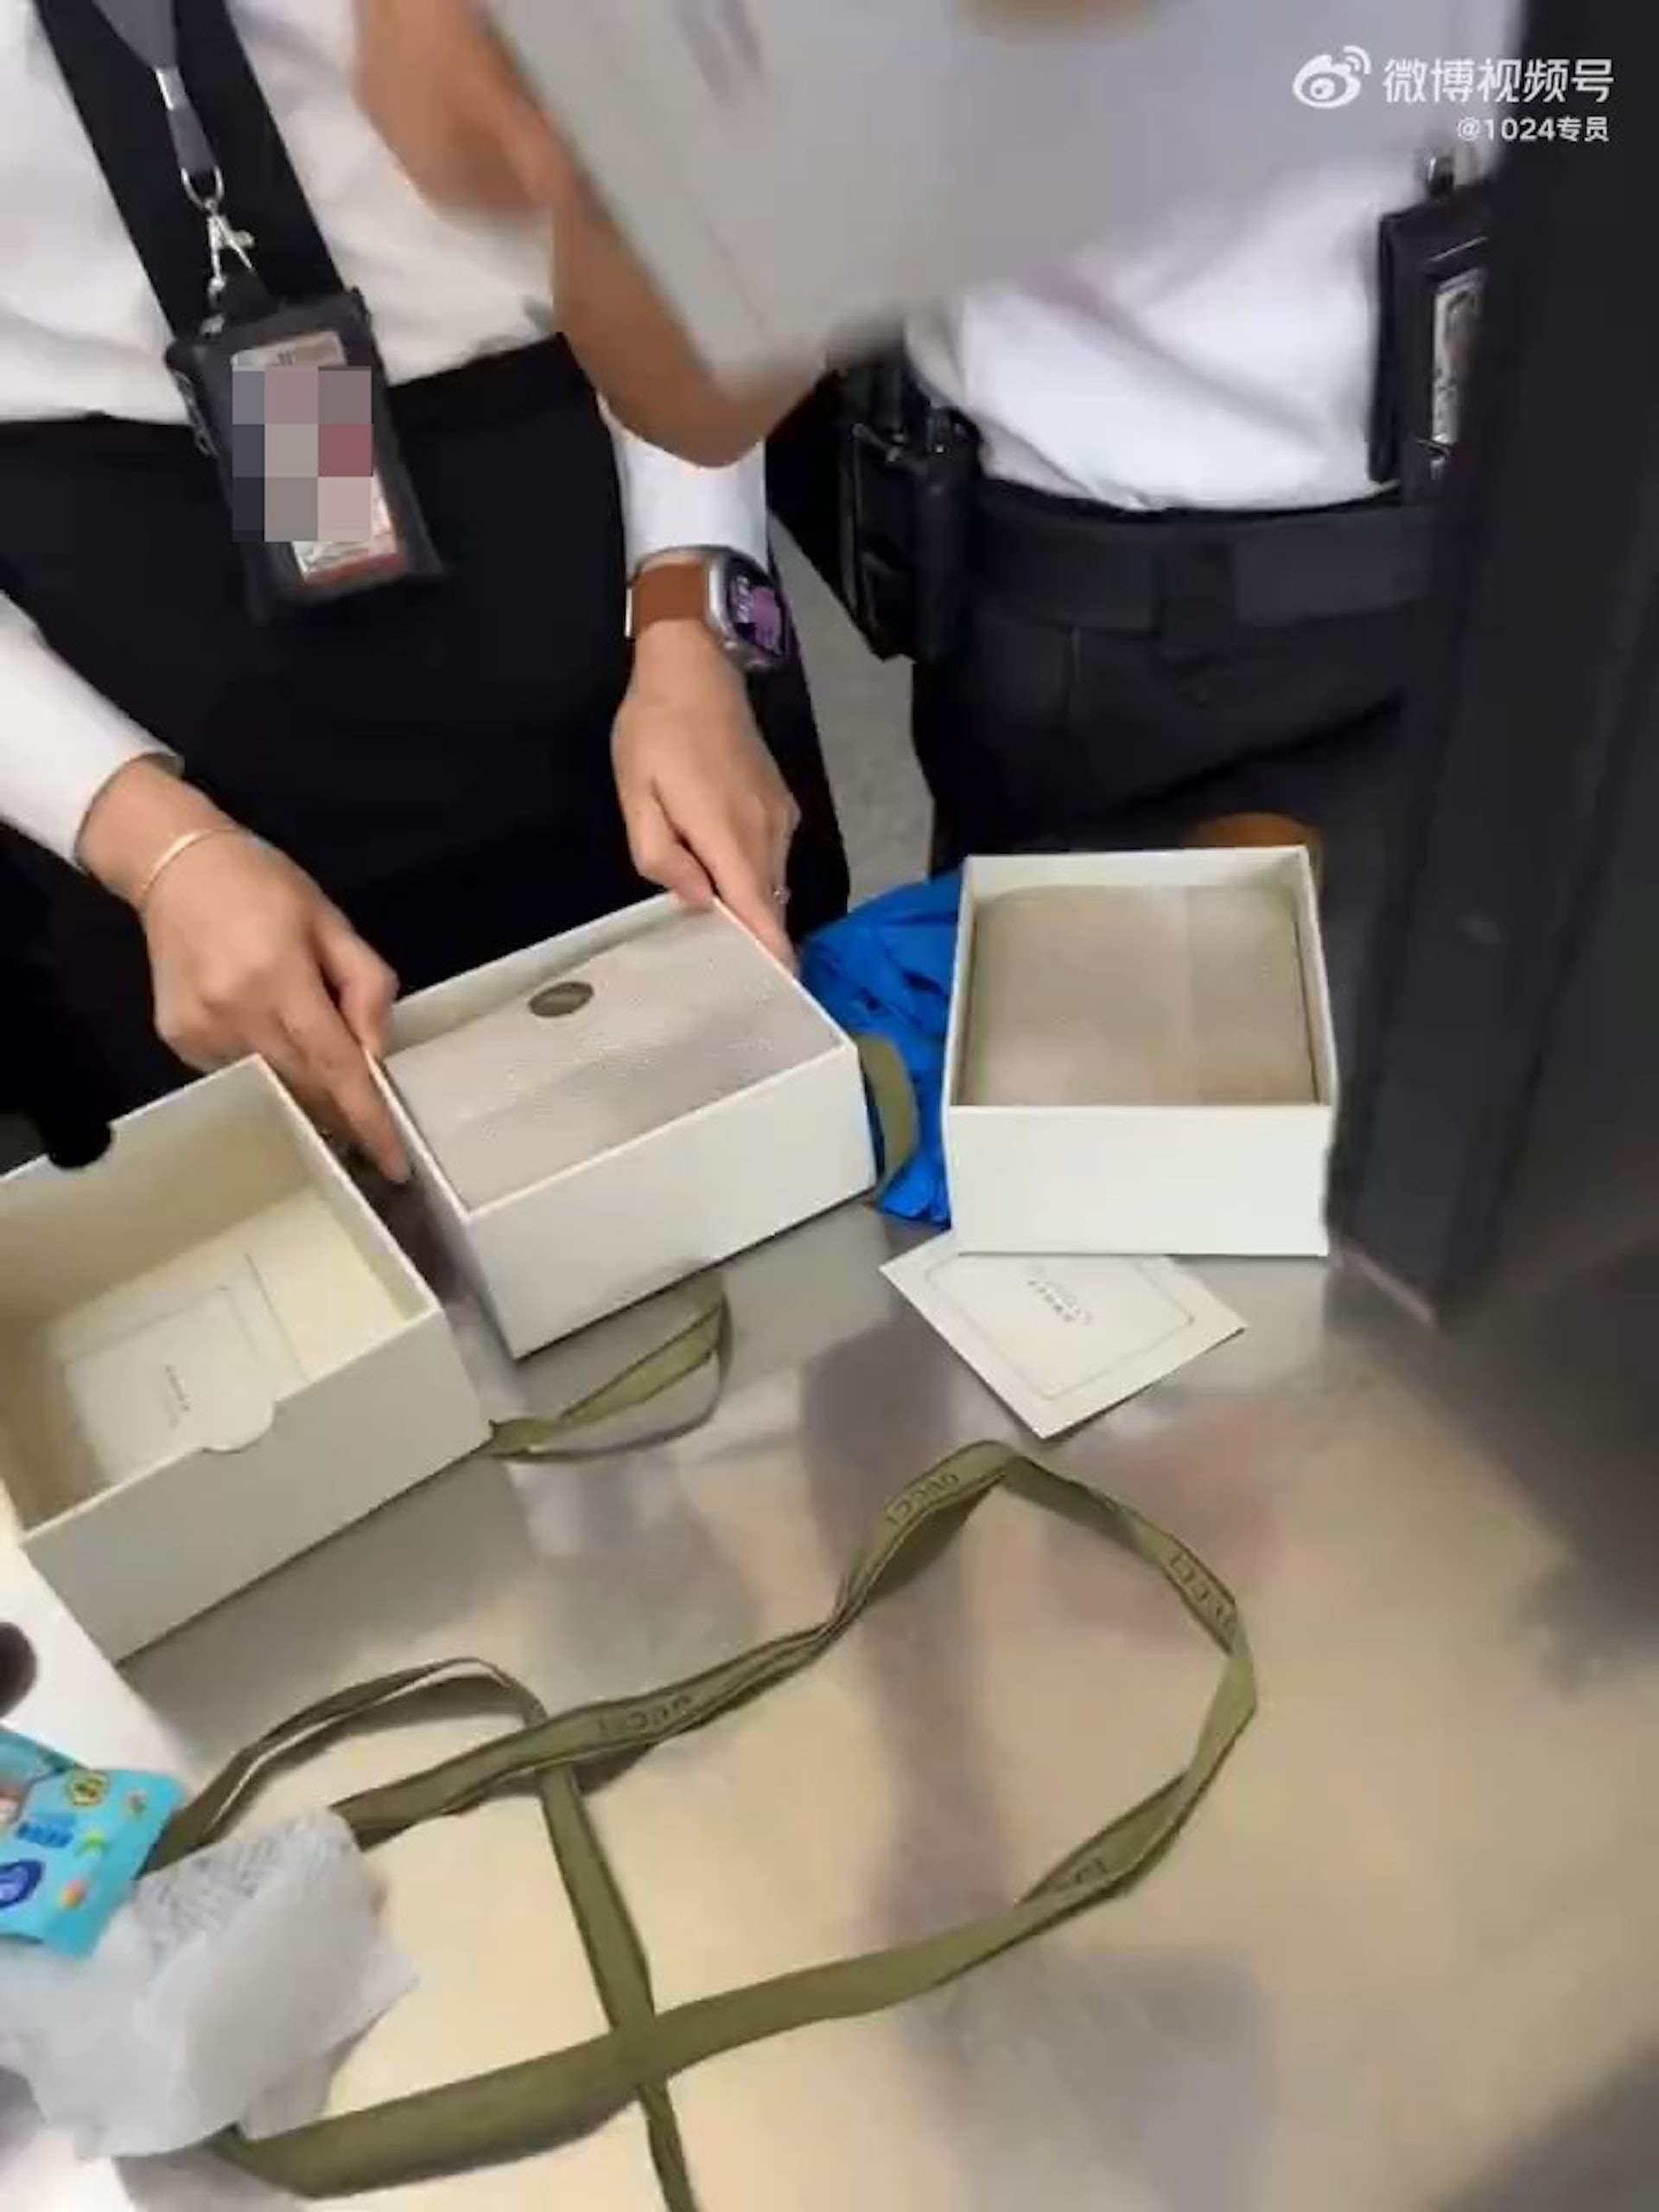 香港機場保安把「XO醬」拆盒取出並解釋原因，內地大媽則在連珠發炮質問保安。（影片截圖）